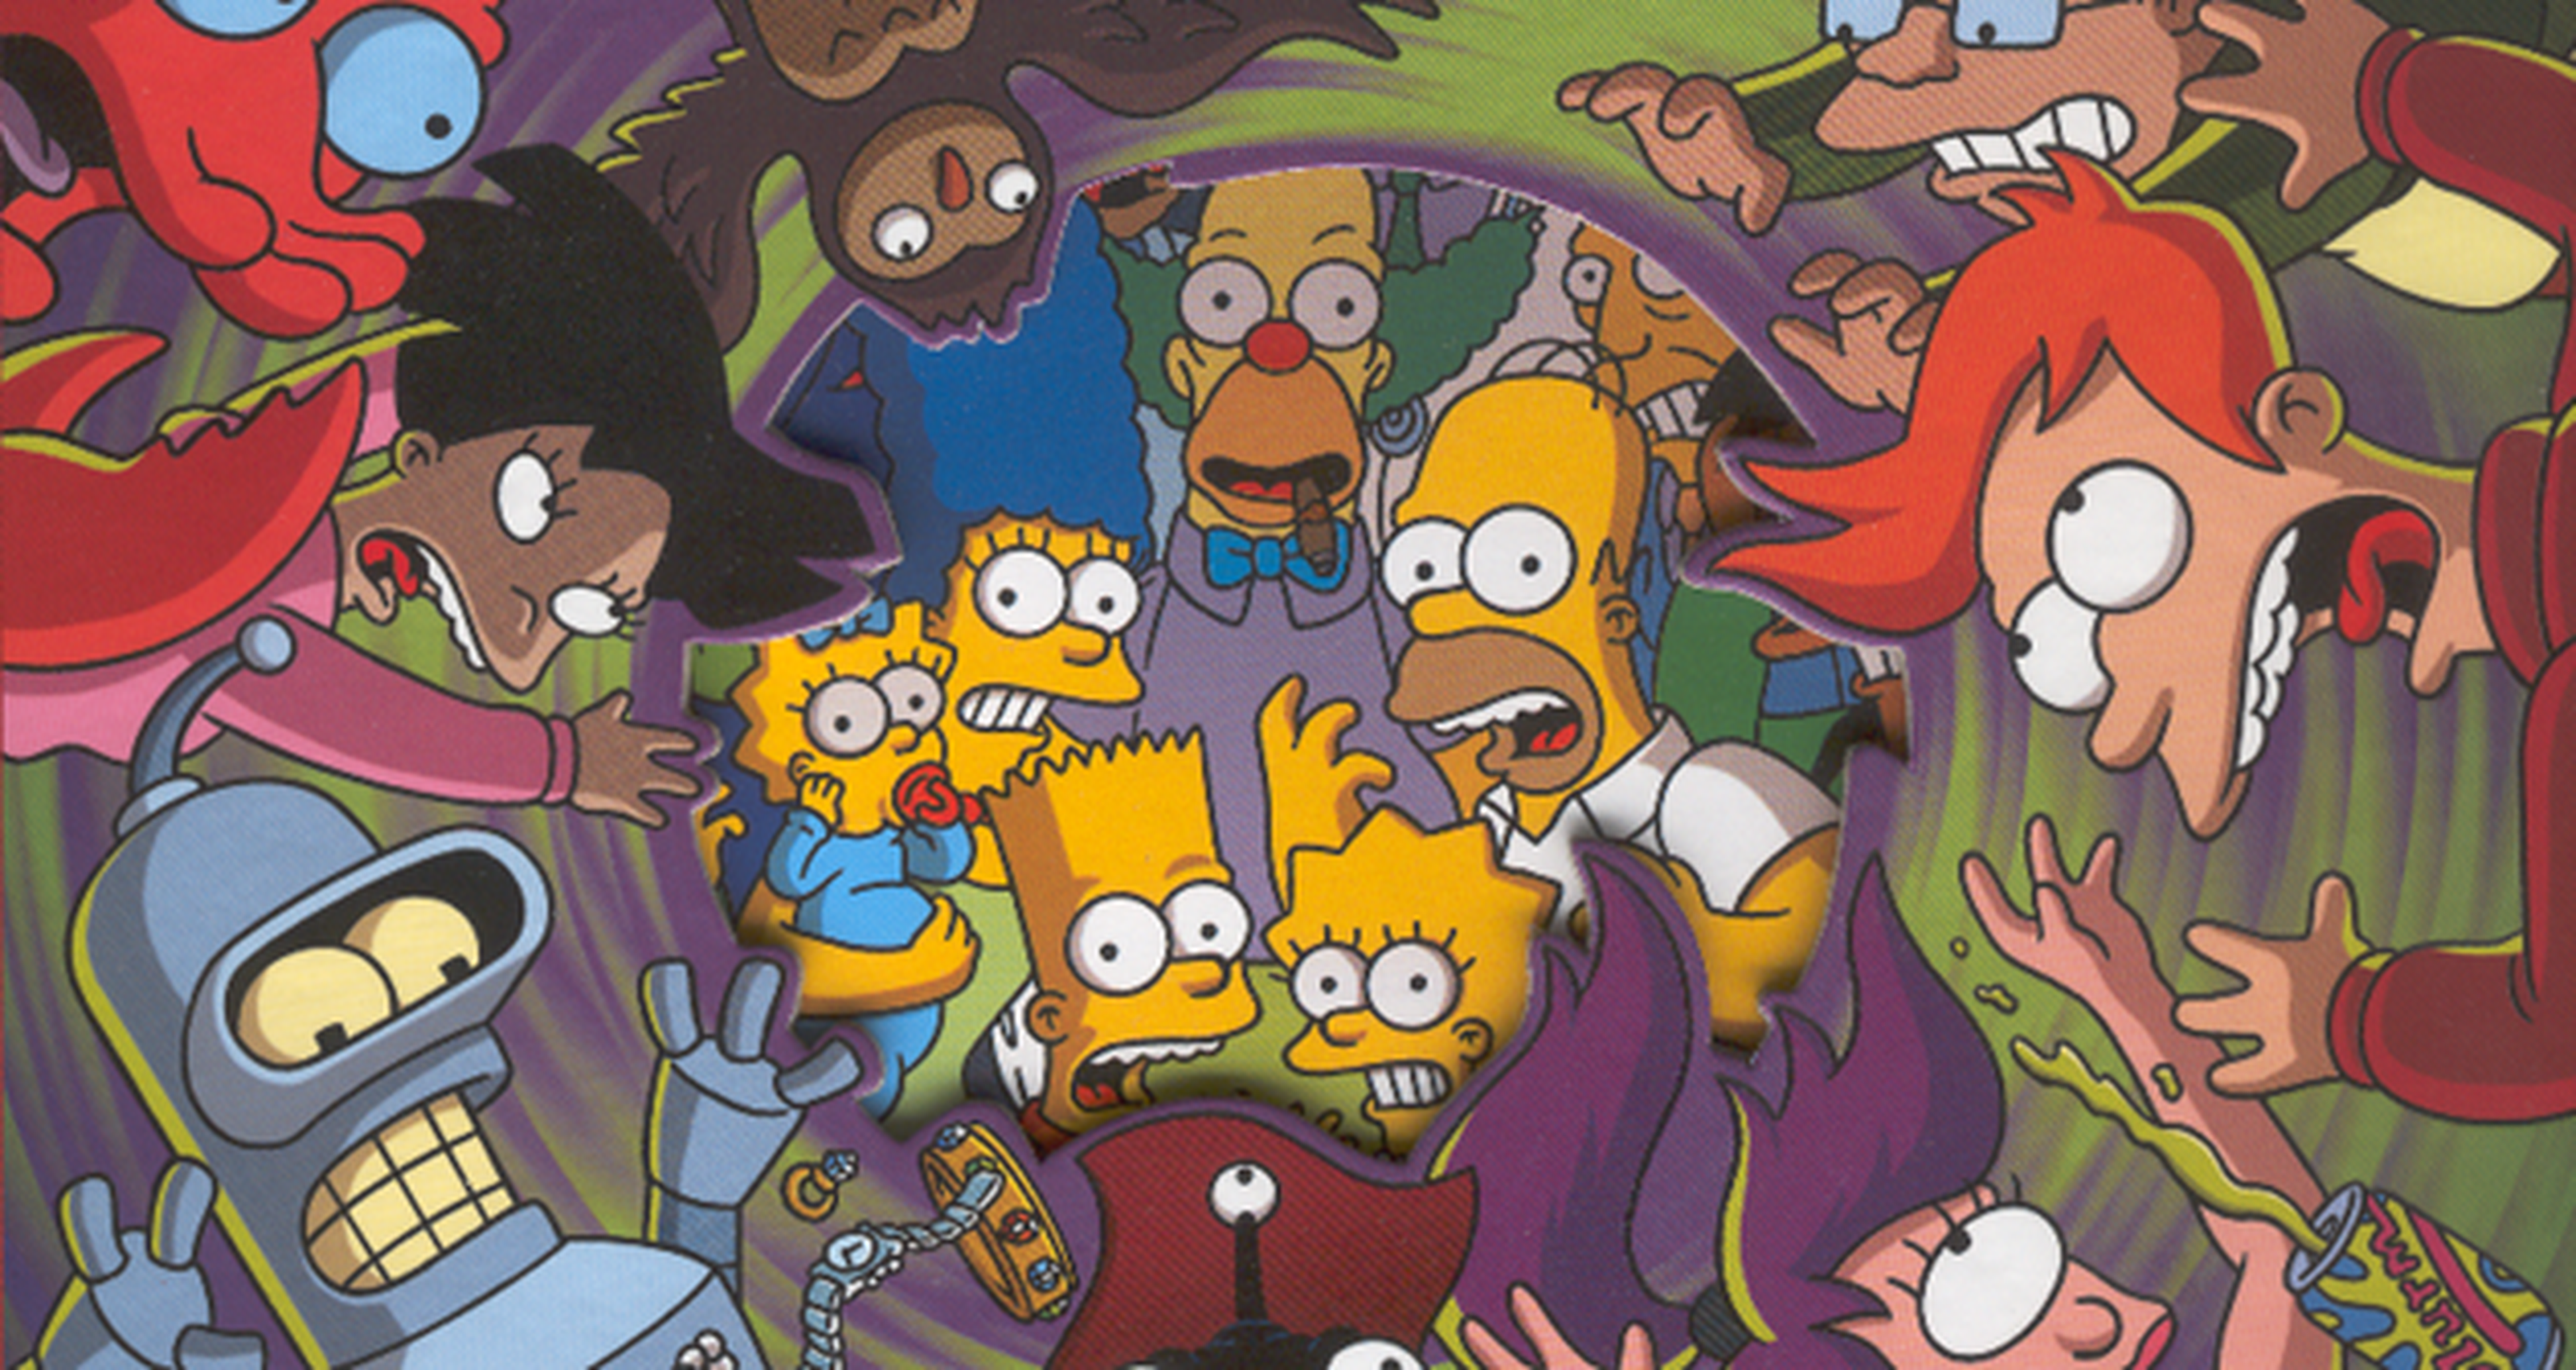 El crossover de Los Simpsons y Futurama se acerca